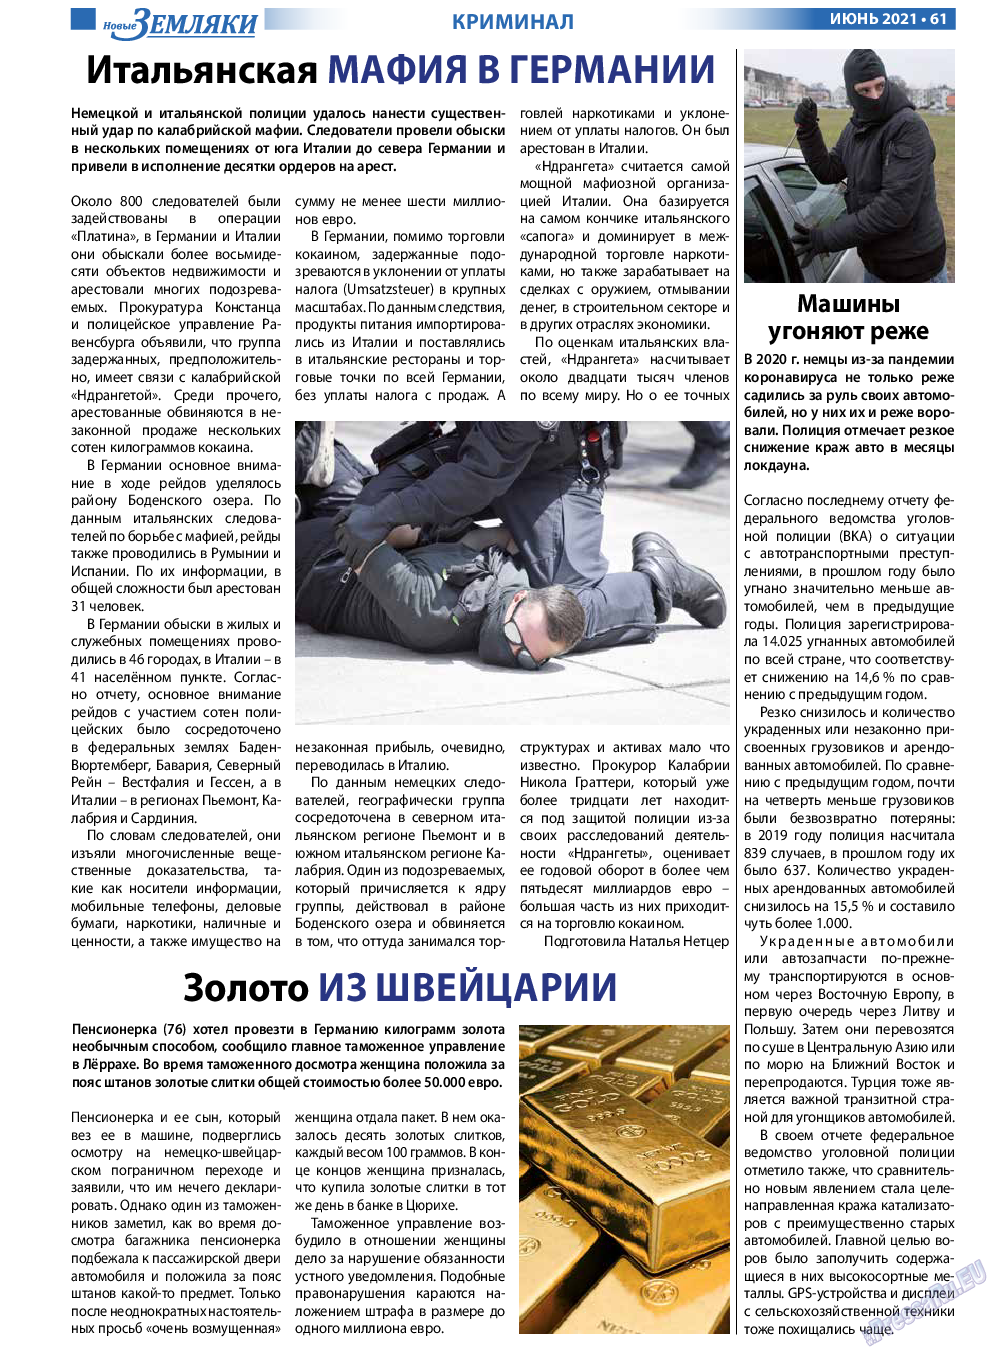 Новые Земляки, газета. 2021 №6 стр.61